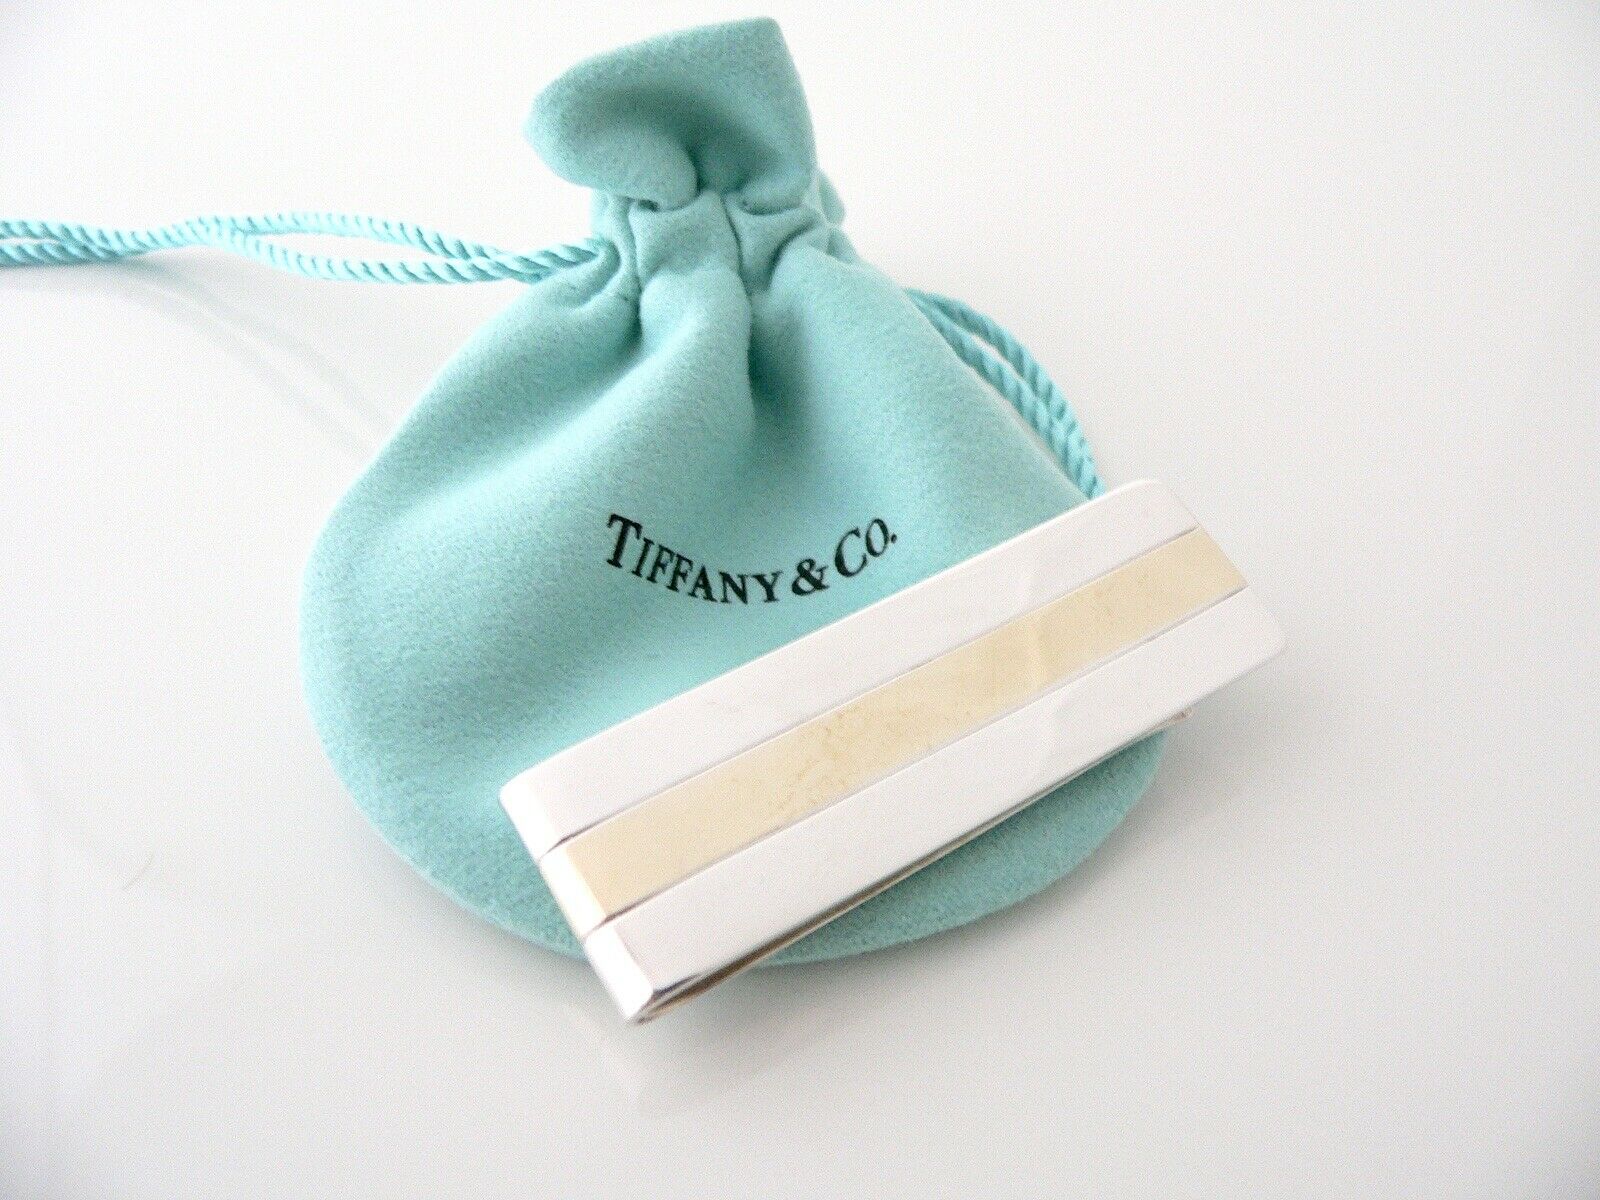 Tiffany & Co Silver 18K Gold Stripe Money Clip Holder Rare Pouch